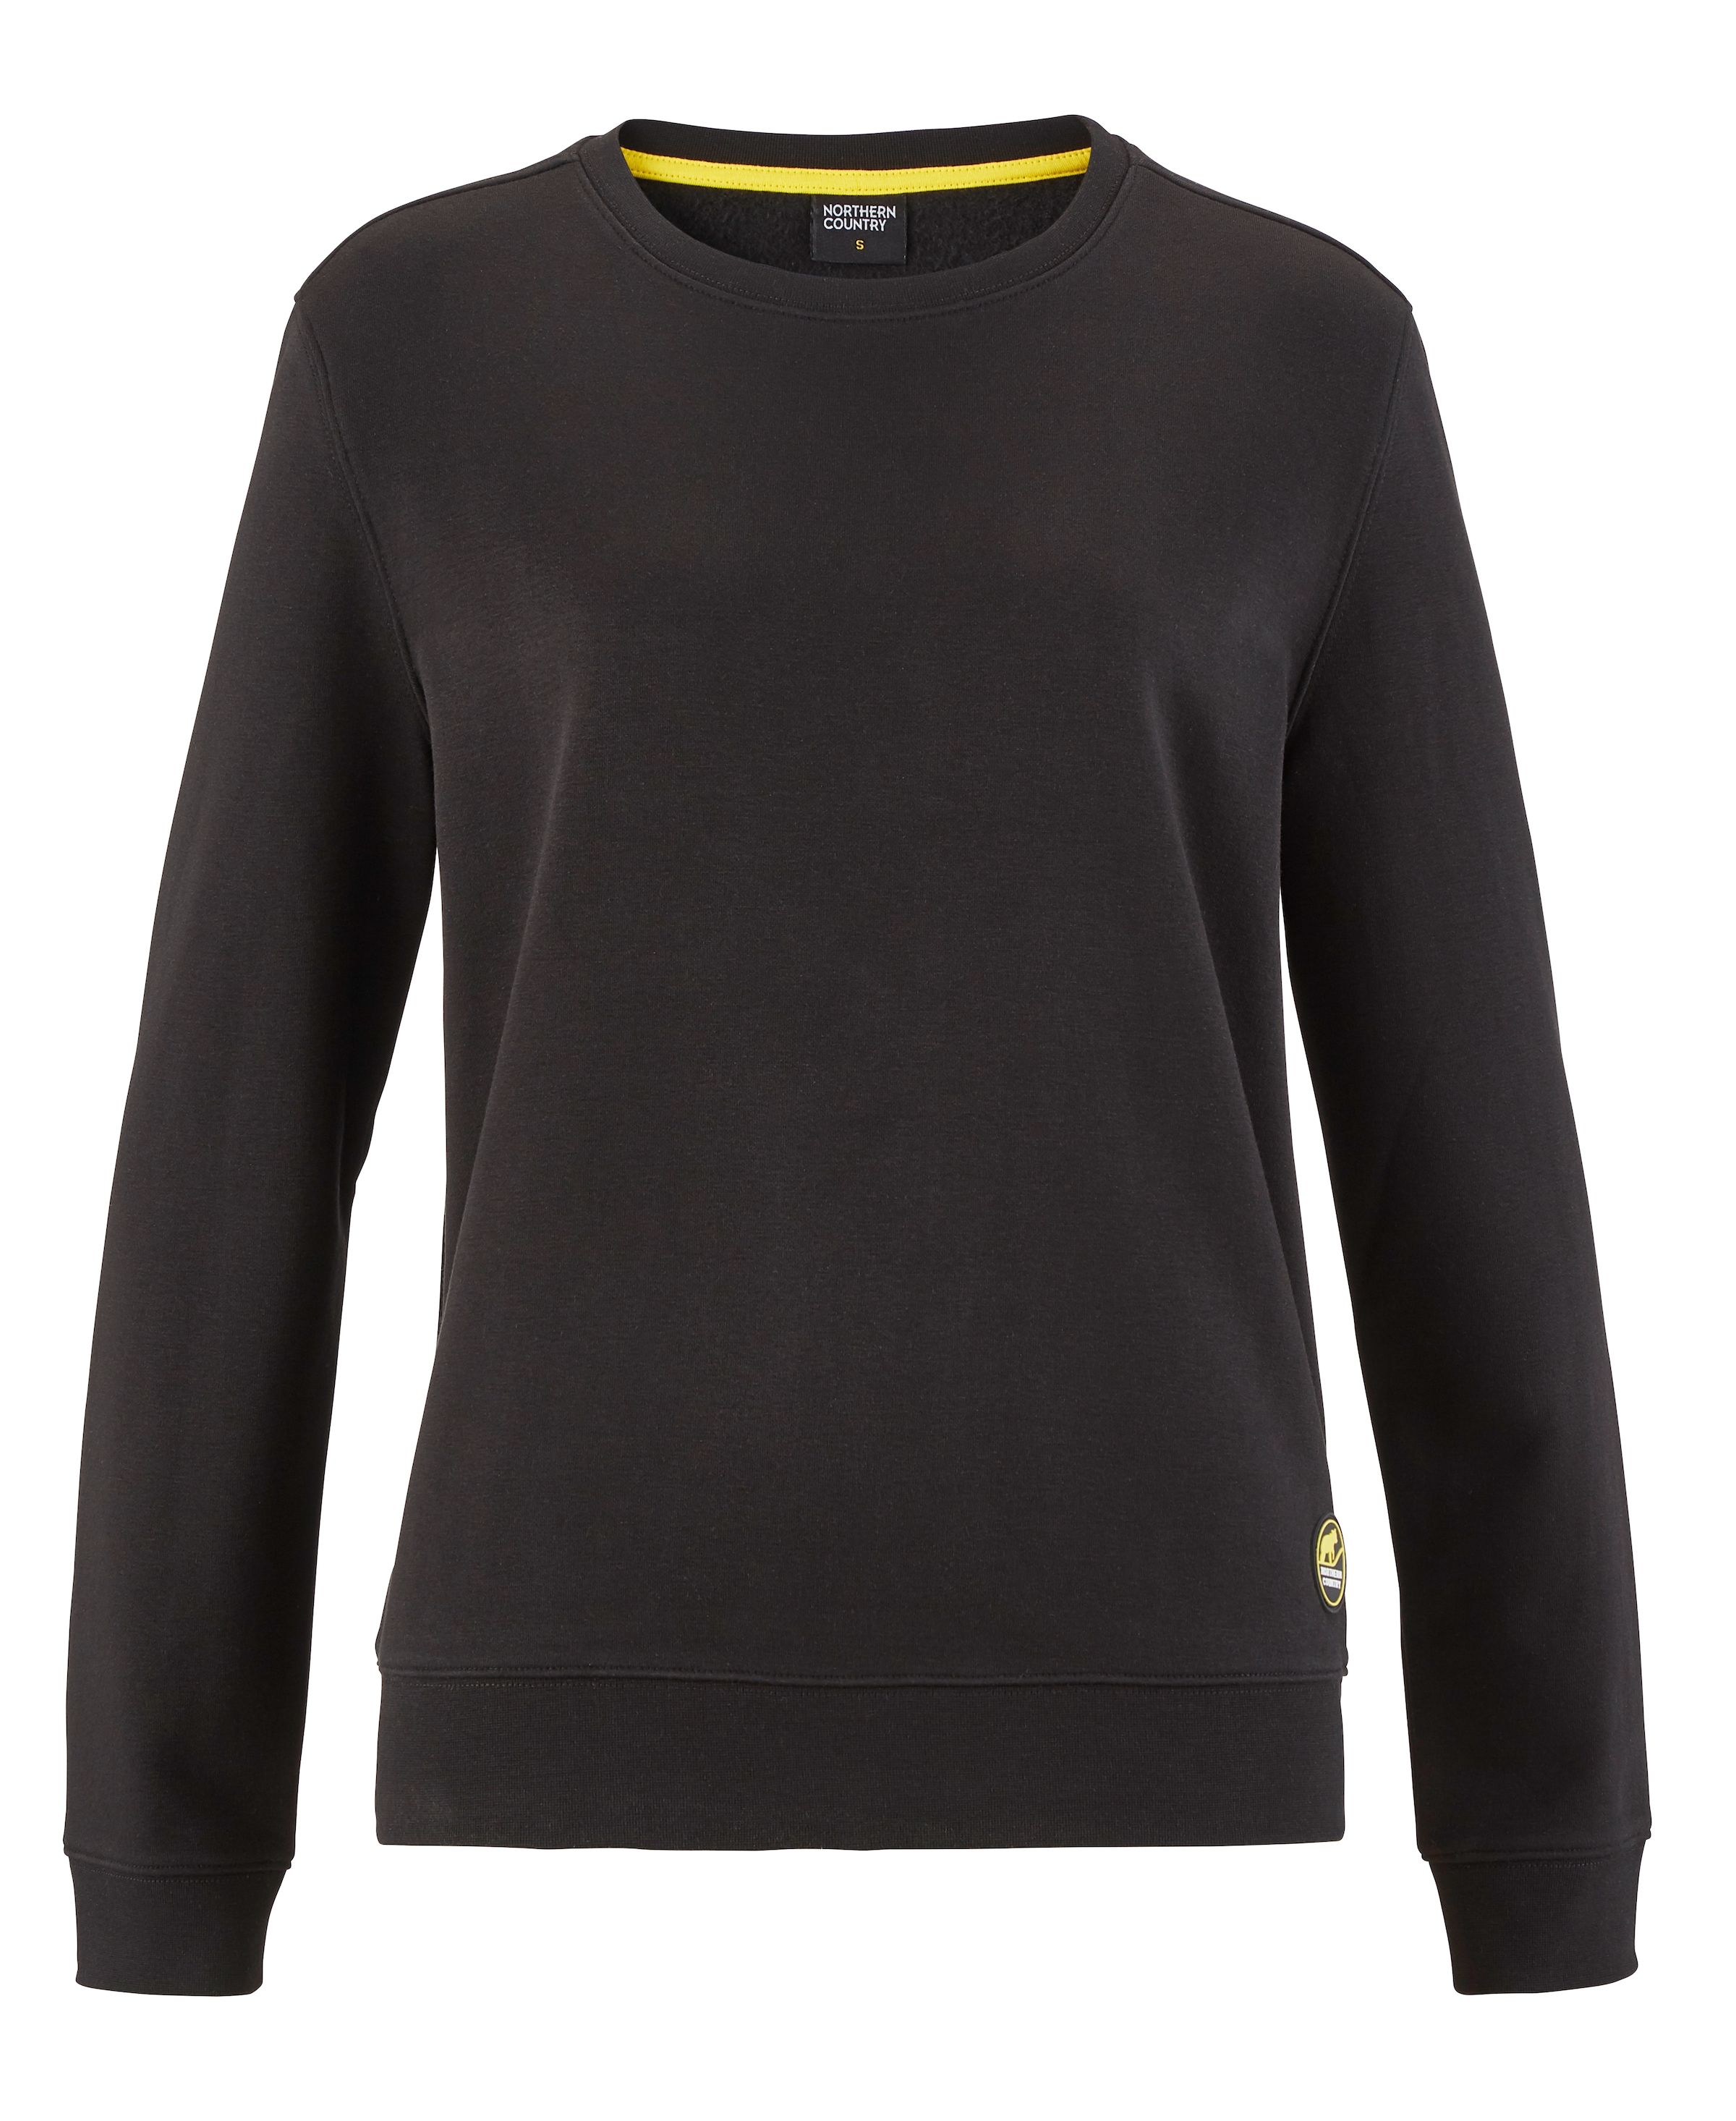 Northern Country Sweatshirt, OTTO Baumwollmix, locker für bei leicht online Damen soften trägt sich aus kaufen und